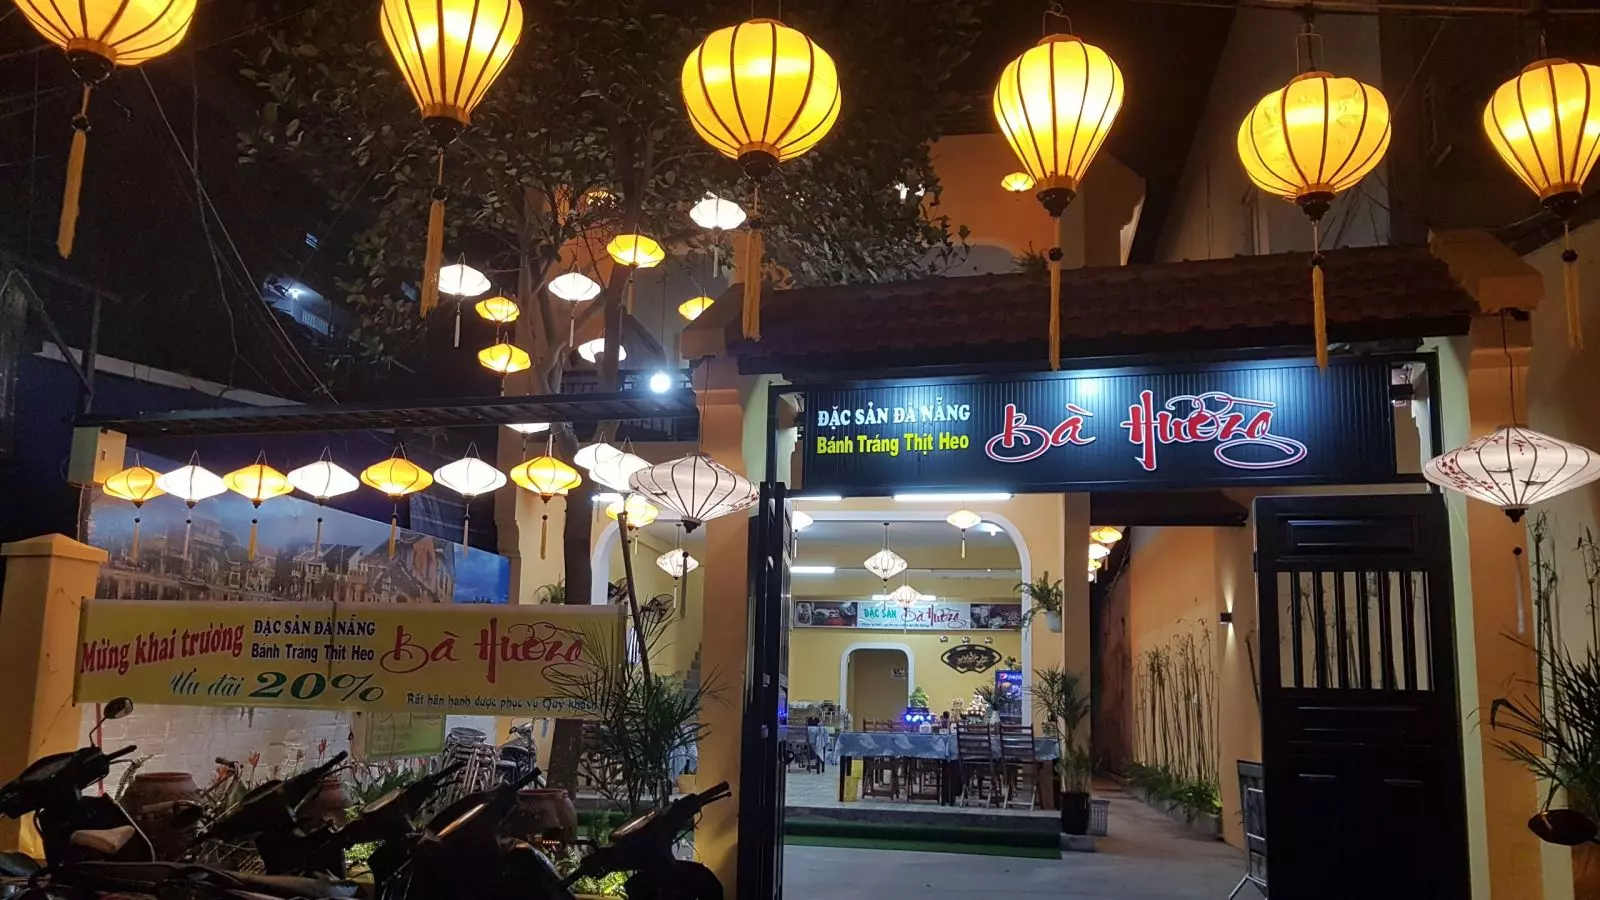 Ba Huong Restaurant